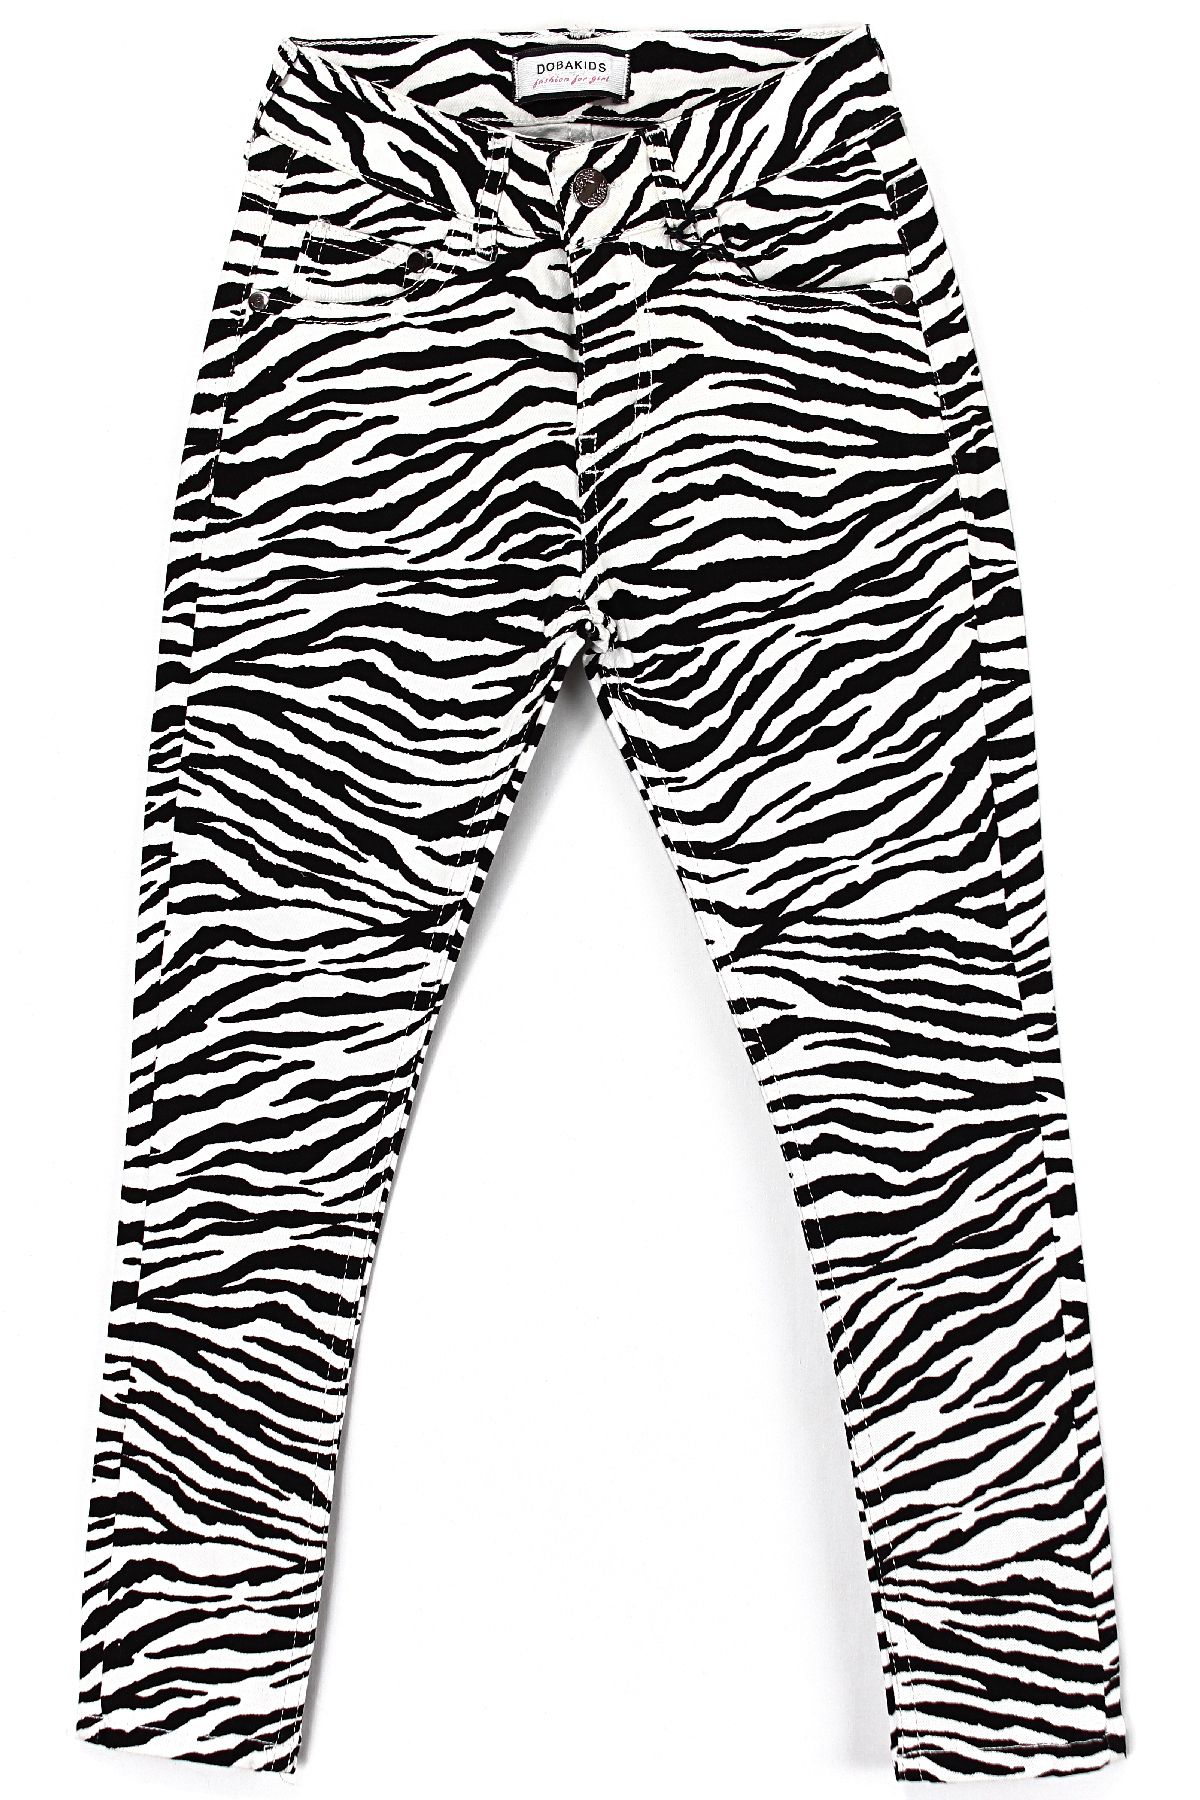 DobaKids Zebra Desen Keten Kız Çocuk Pantolonu 9-14 Yaş Aralığı Beyaz